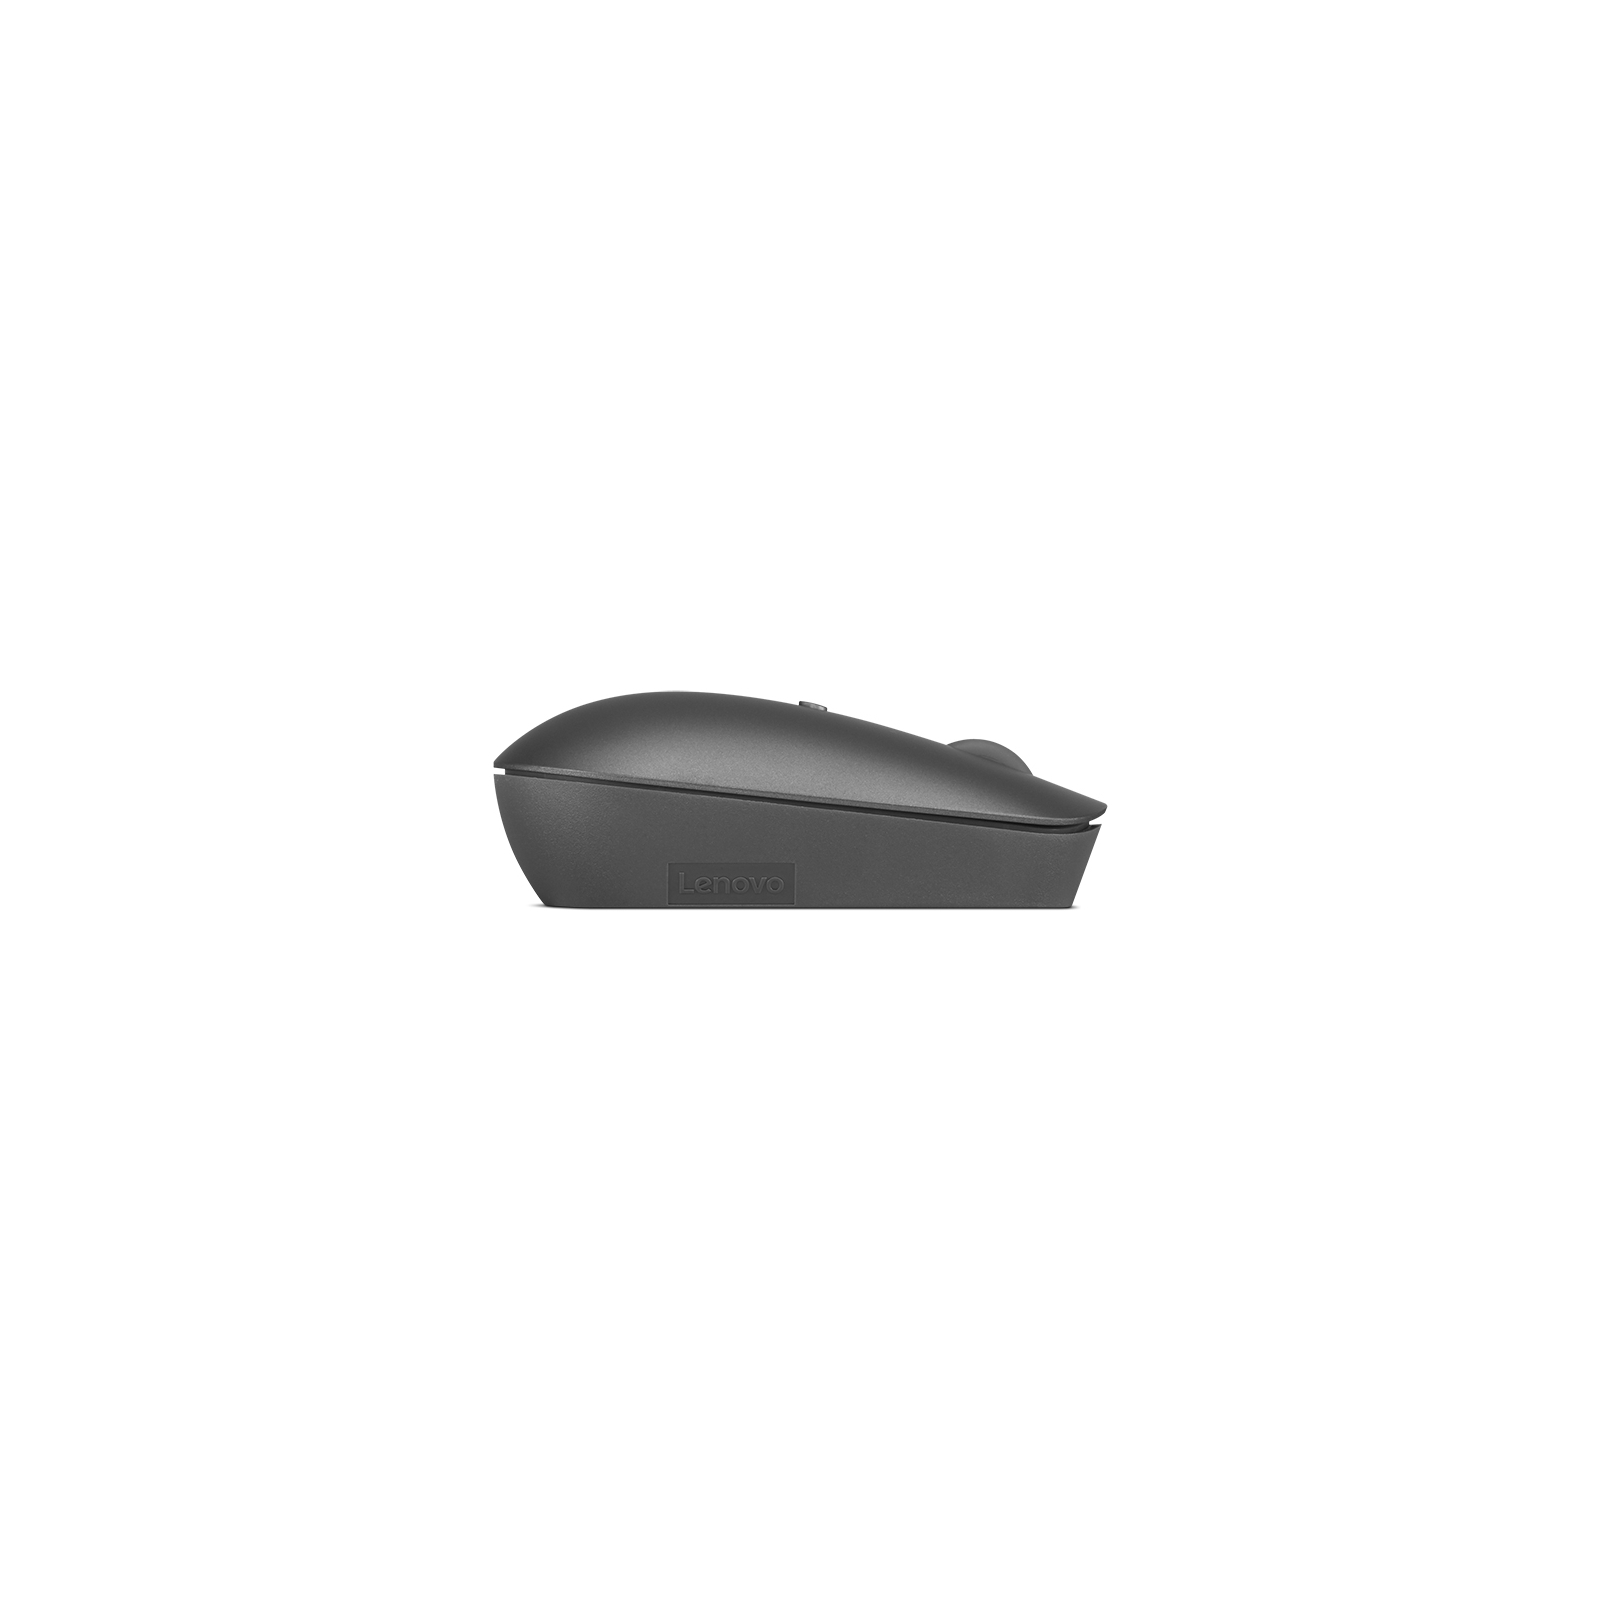 Мышка Lenovo 540 USB-C Wireless Storm Grey (GY51D20867) изображение 5